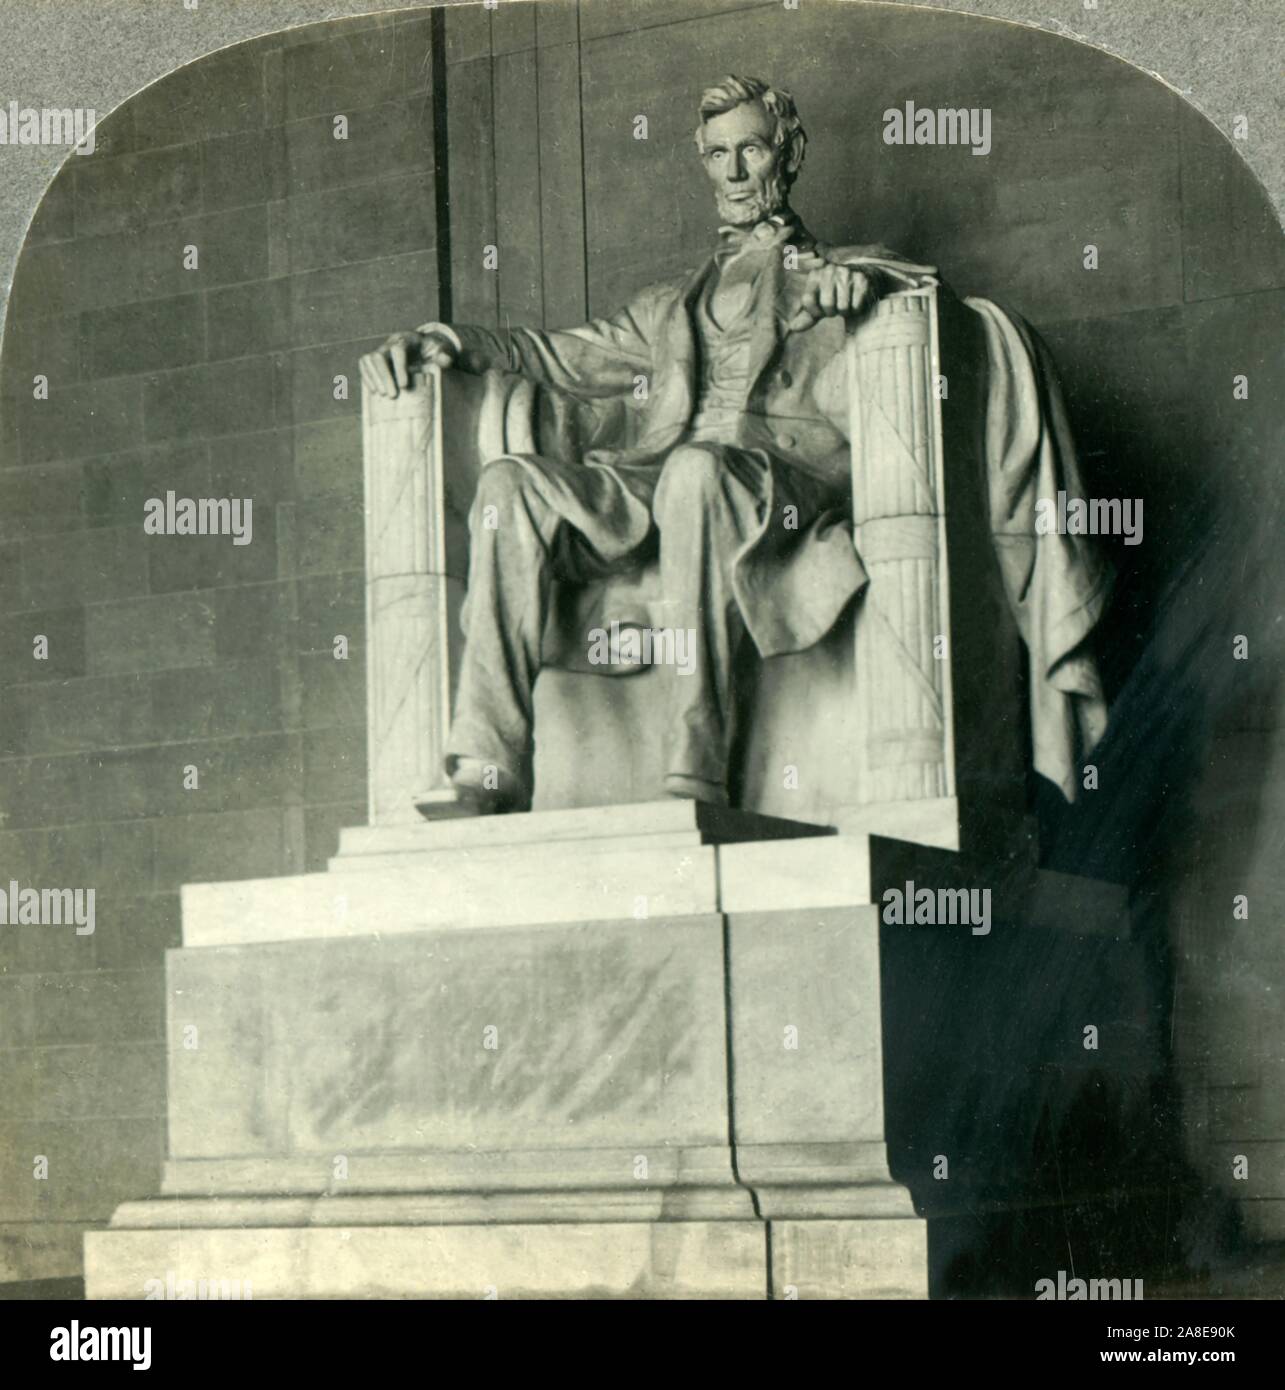 "Lincoln triumphierend, die große Statue in der Lincoln Memorial, Washington D.C.', c 1930. Statue des 16. Präsident der Vereinigten Staaten Abraham Lincoln von Daniel Chester French konzipiert; durch die Piccirilli Brüder geschnitzt. Lincoln werden mit Zeichensprache seine Initialen zu vertreten, seine linke Hand ist so geformt, dass eine 'A' und seine Rechte bildet die Buchstaben 'L' zu bilden. Von "Tour der Welt". [Keystone View Company, Meadville, Pa., New York, Chicago, London] Stockfoto